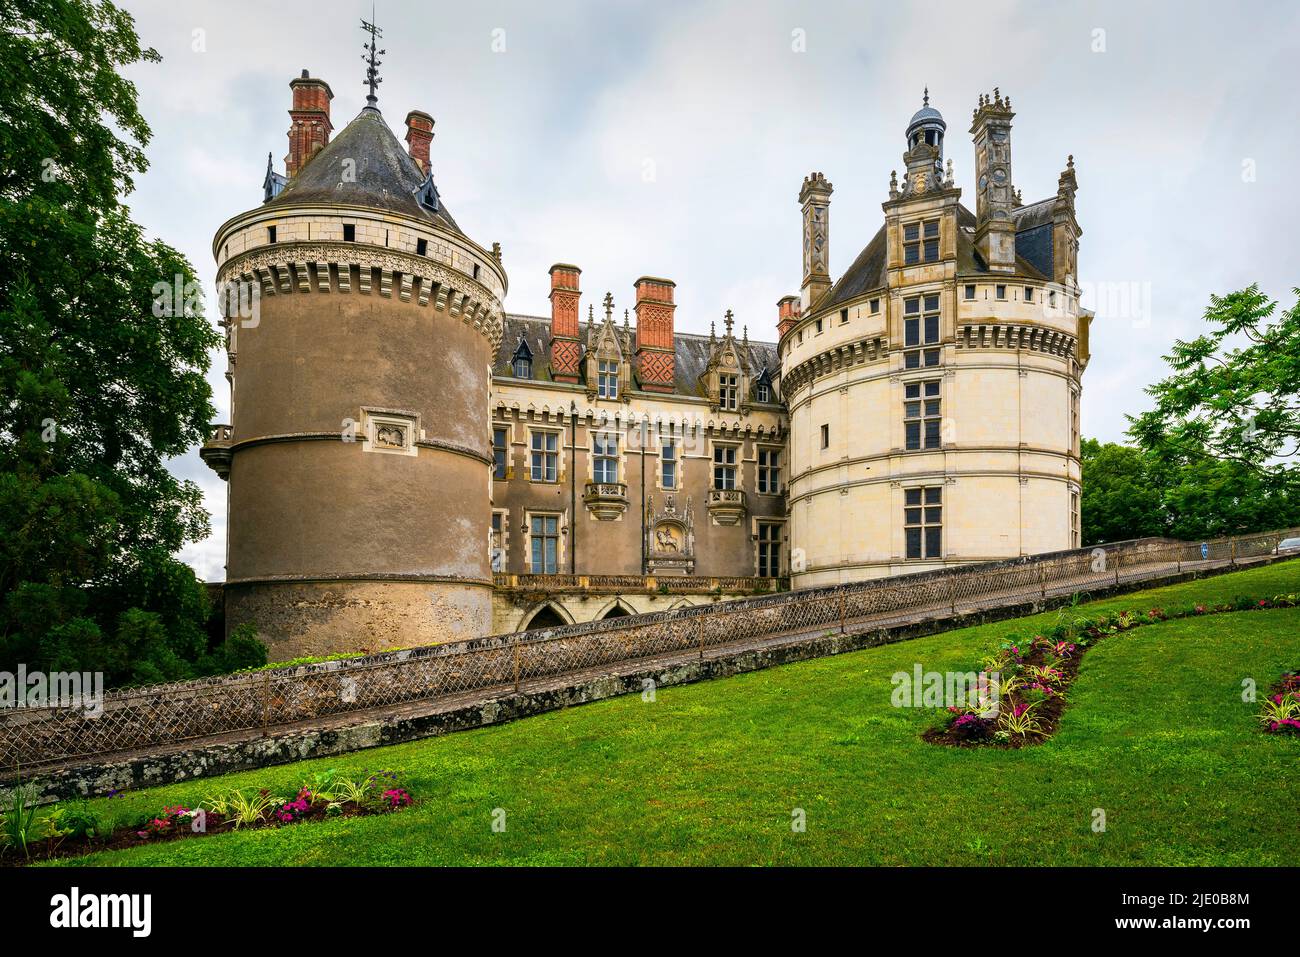 Le Lude, castello, Château, comune di le Lude, dipartimento della Sarthe, regione, Loira, Francia, architettura, architettura, architetture, banca, ri Foto Stock